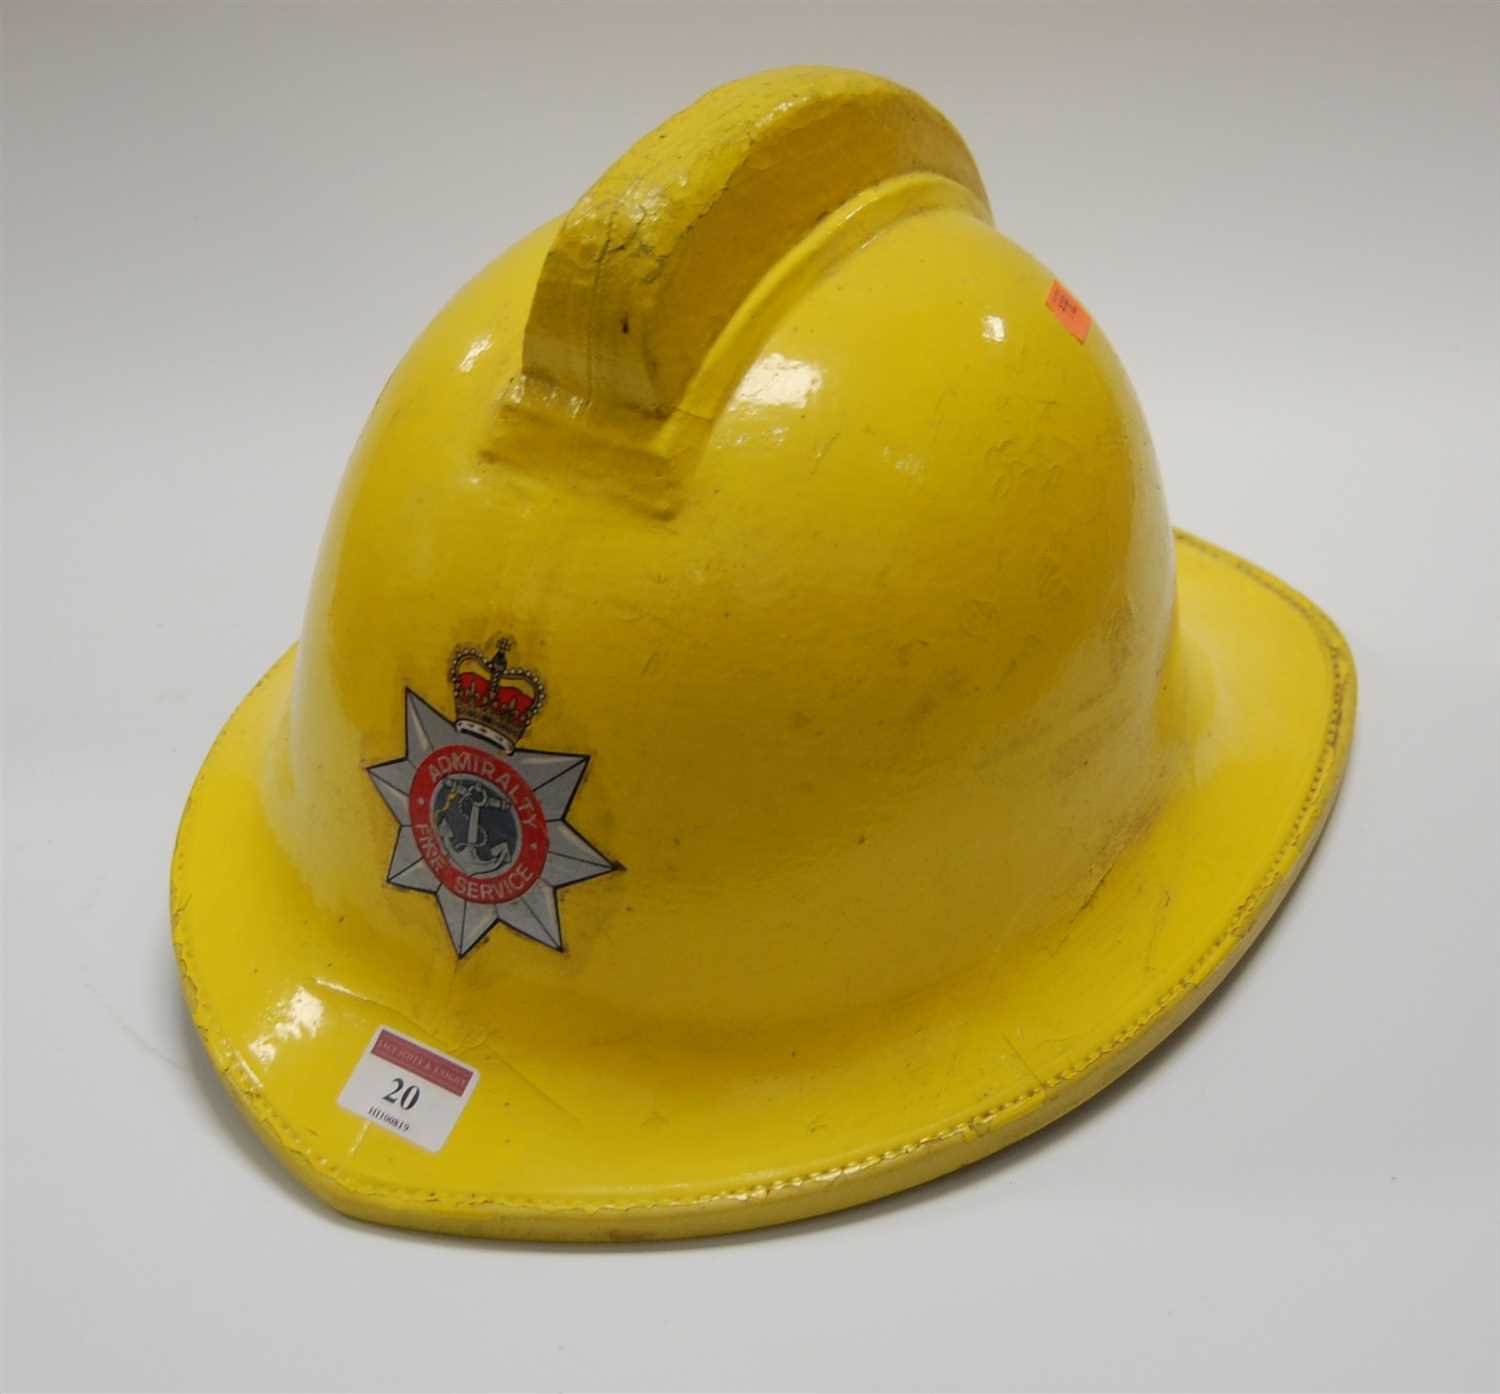 Lot 20 - An Admiralty Fire Service fireman's helmet,...